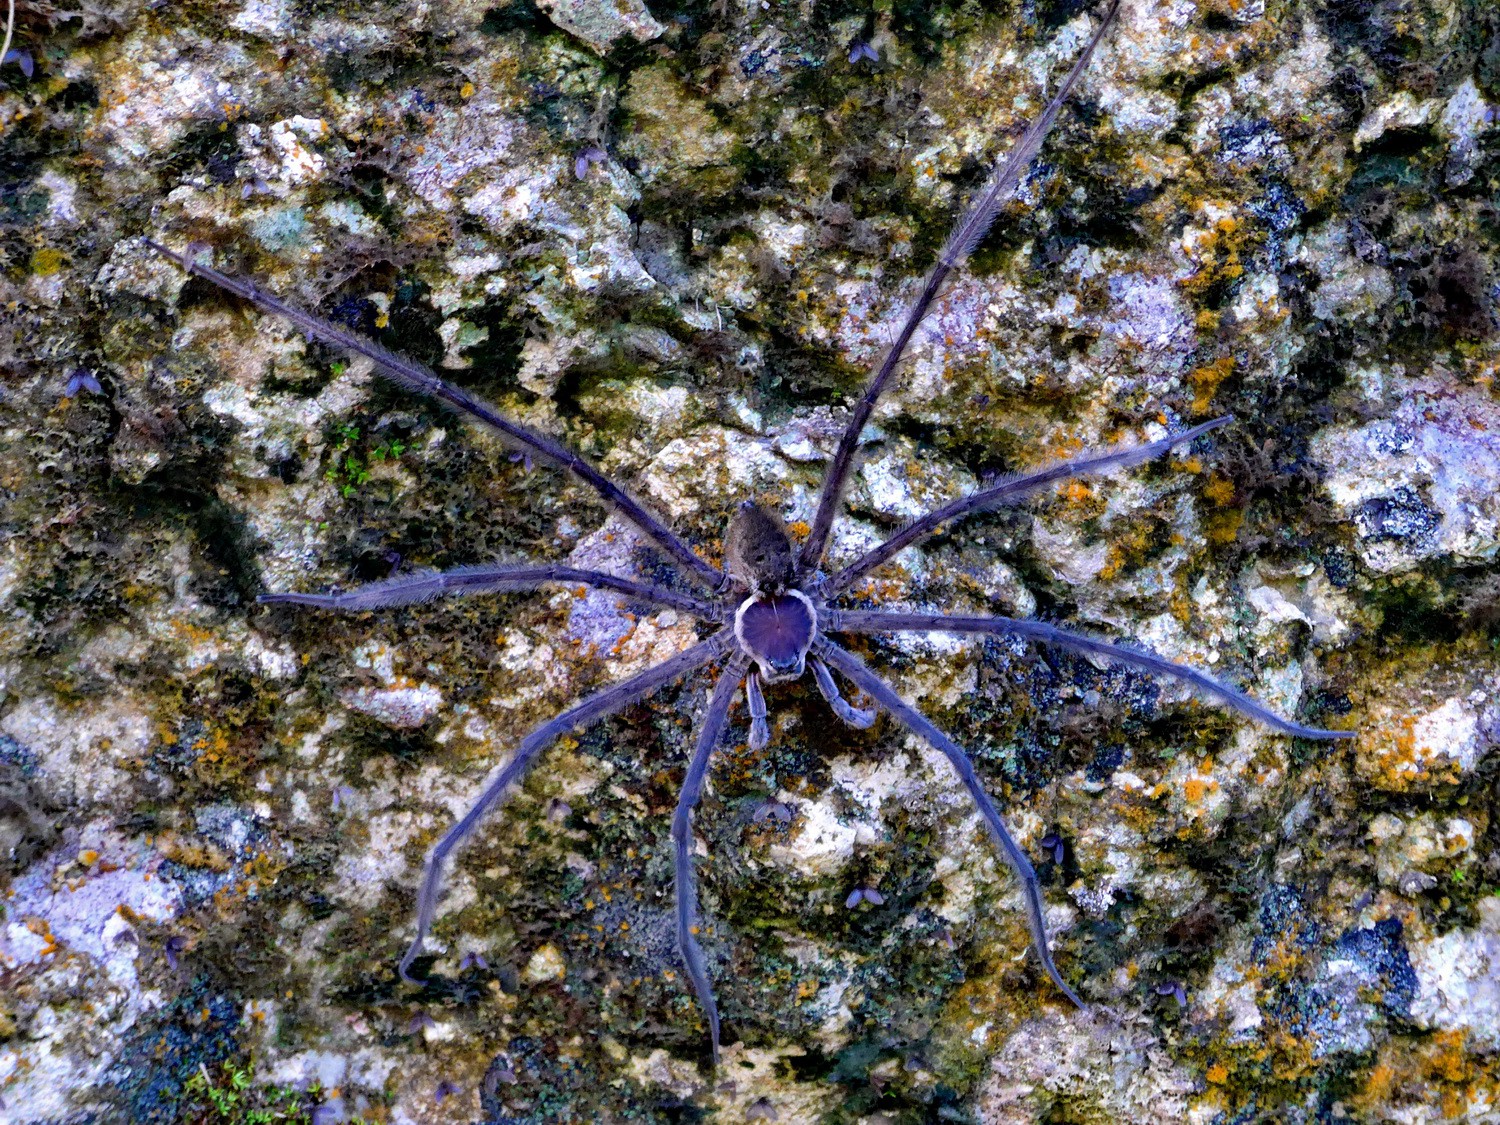 Huge spider approx 15cm diameter